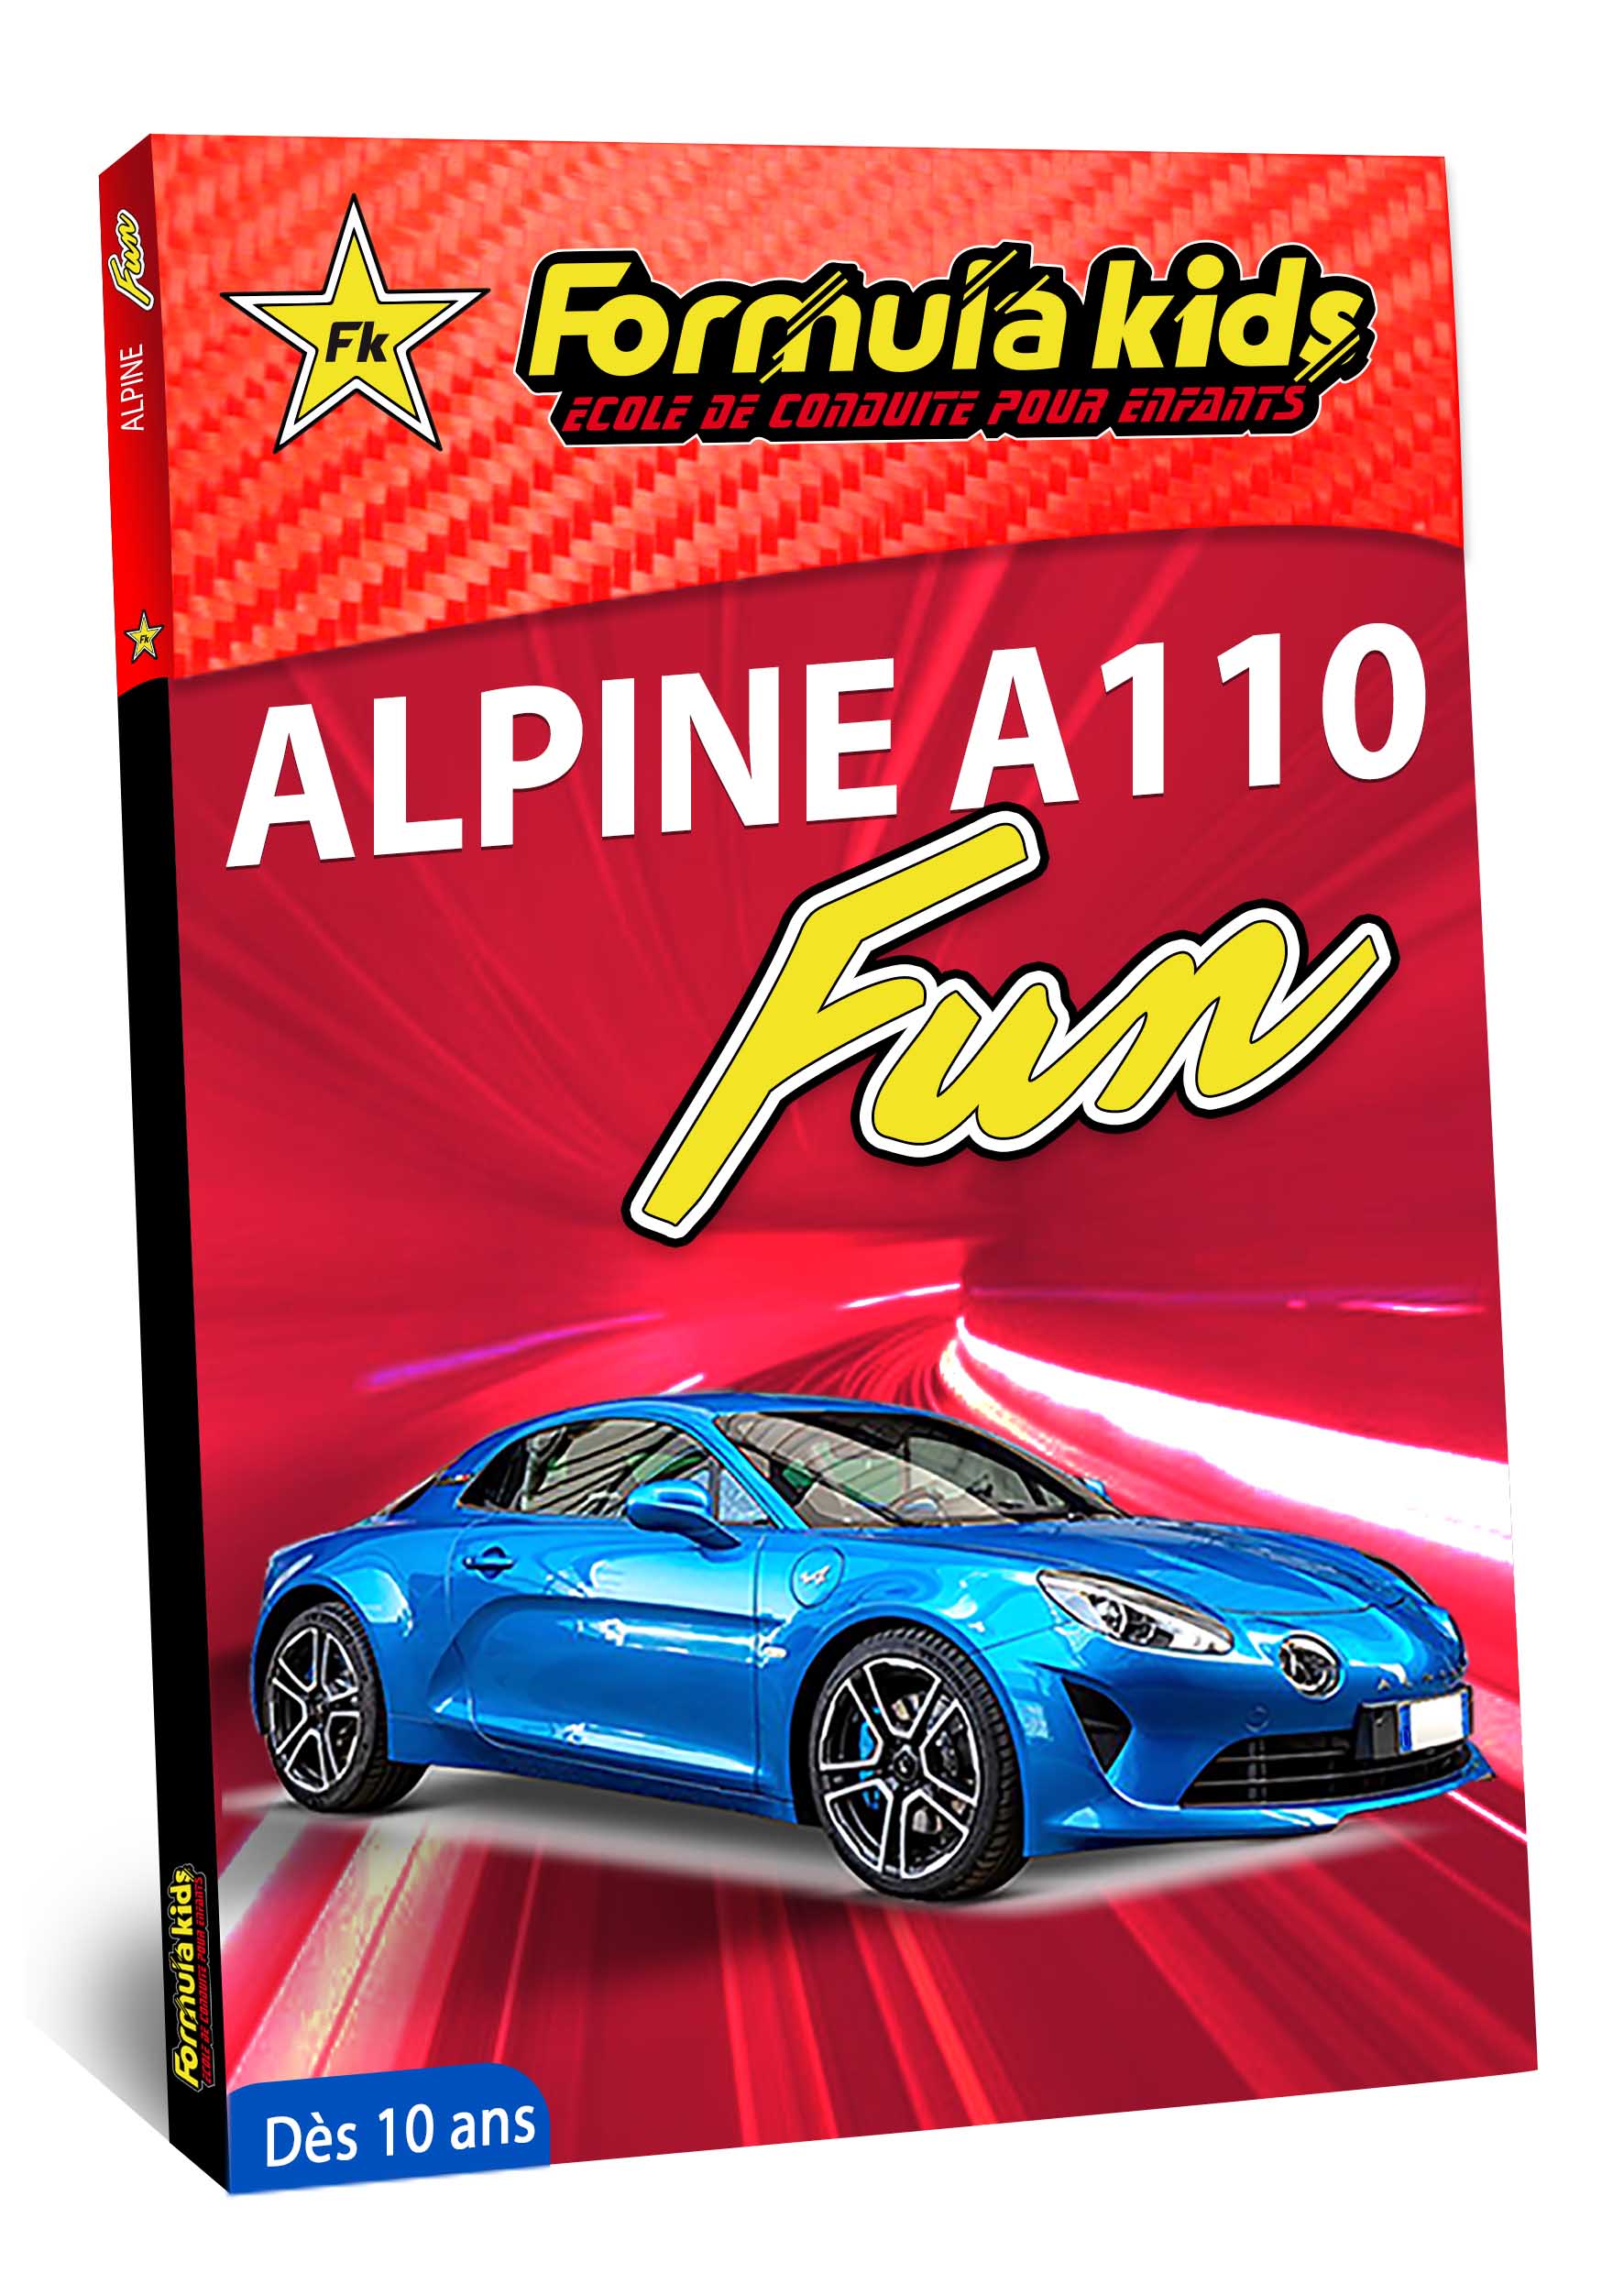 Alpine A110 fun - Conduire une Alpine A110 dès 10 ans - Formula Kids - Stage de conduite enfant - Stage de pilotage sur As'Phalte - Stage Junior - Conduire une A110 dès 7 ans - Formula Kids - Stage de conduite enfant - Stage de pilotage sur As'Phalte - Stage Junior - Cadeau - Idée anniversaire - Smart Box - Idée Cadeau - Loisir - Famille - Pilotage - - Pilotage GT - Pilotage enfant - Alpine A110 S - A110 - ALPINE - A310 -